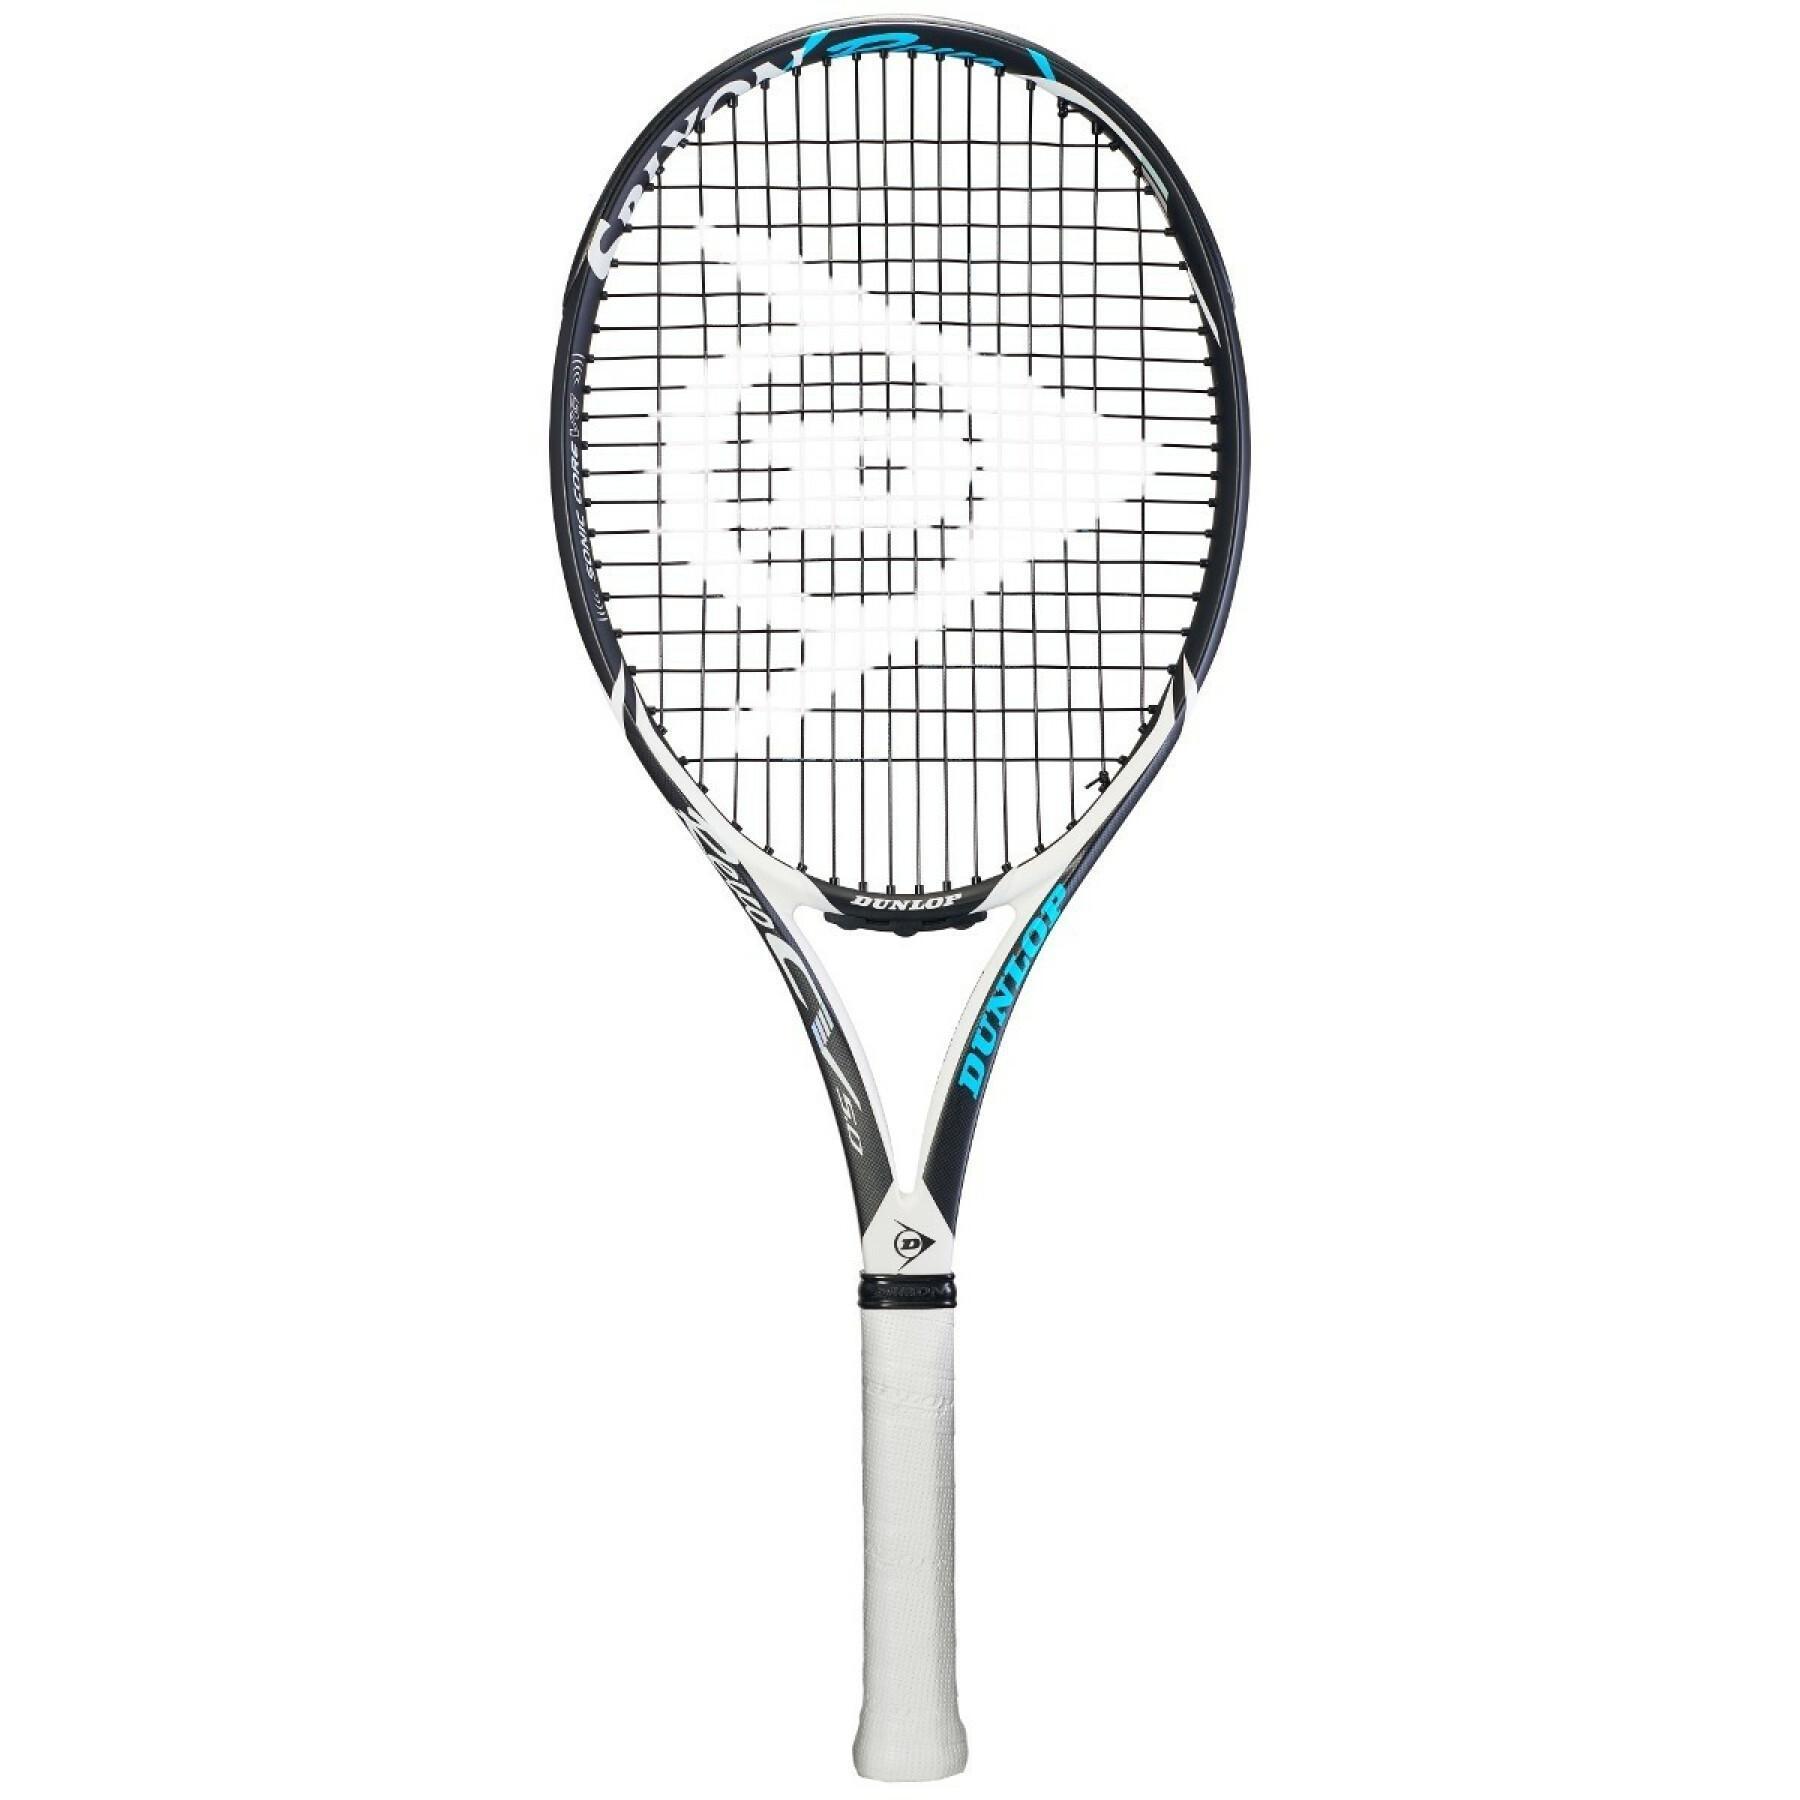 Rakieta tenisowa Dunlop Tf Srx 18Revo cv 5.0 G2